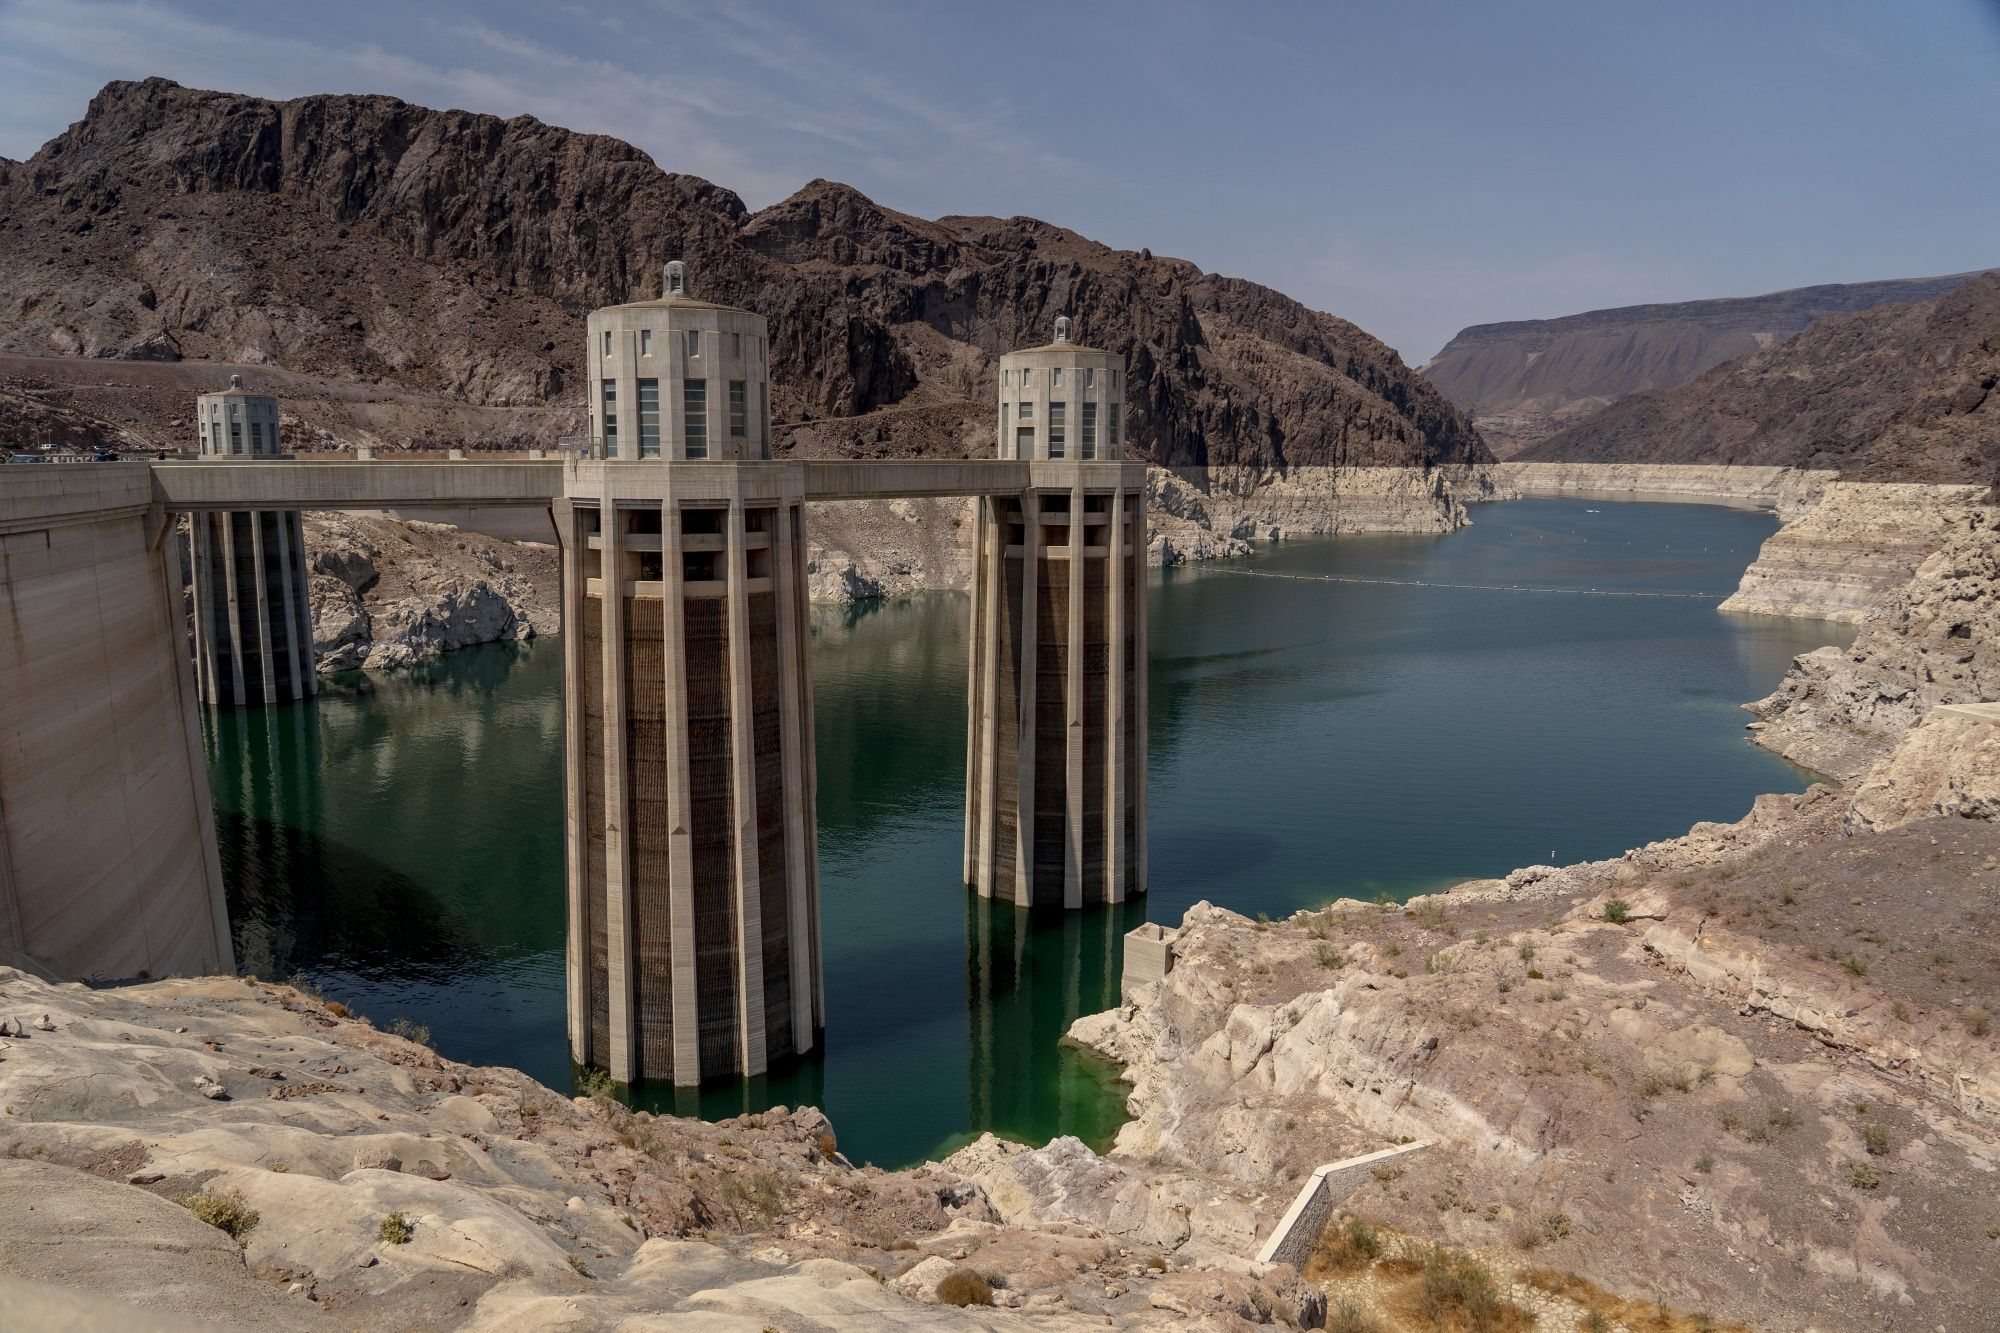 Mỹ khủng hoảng nước: Người dân phải chấp nhận uống nước thải tái chế - Ảnh 4.